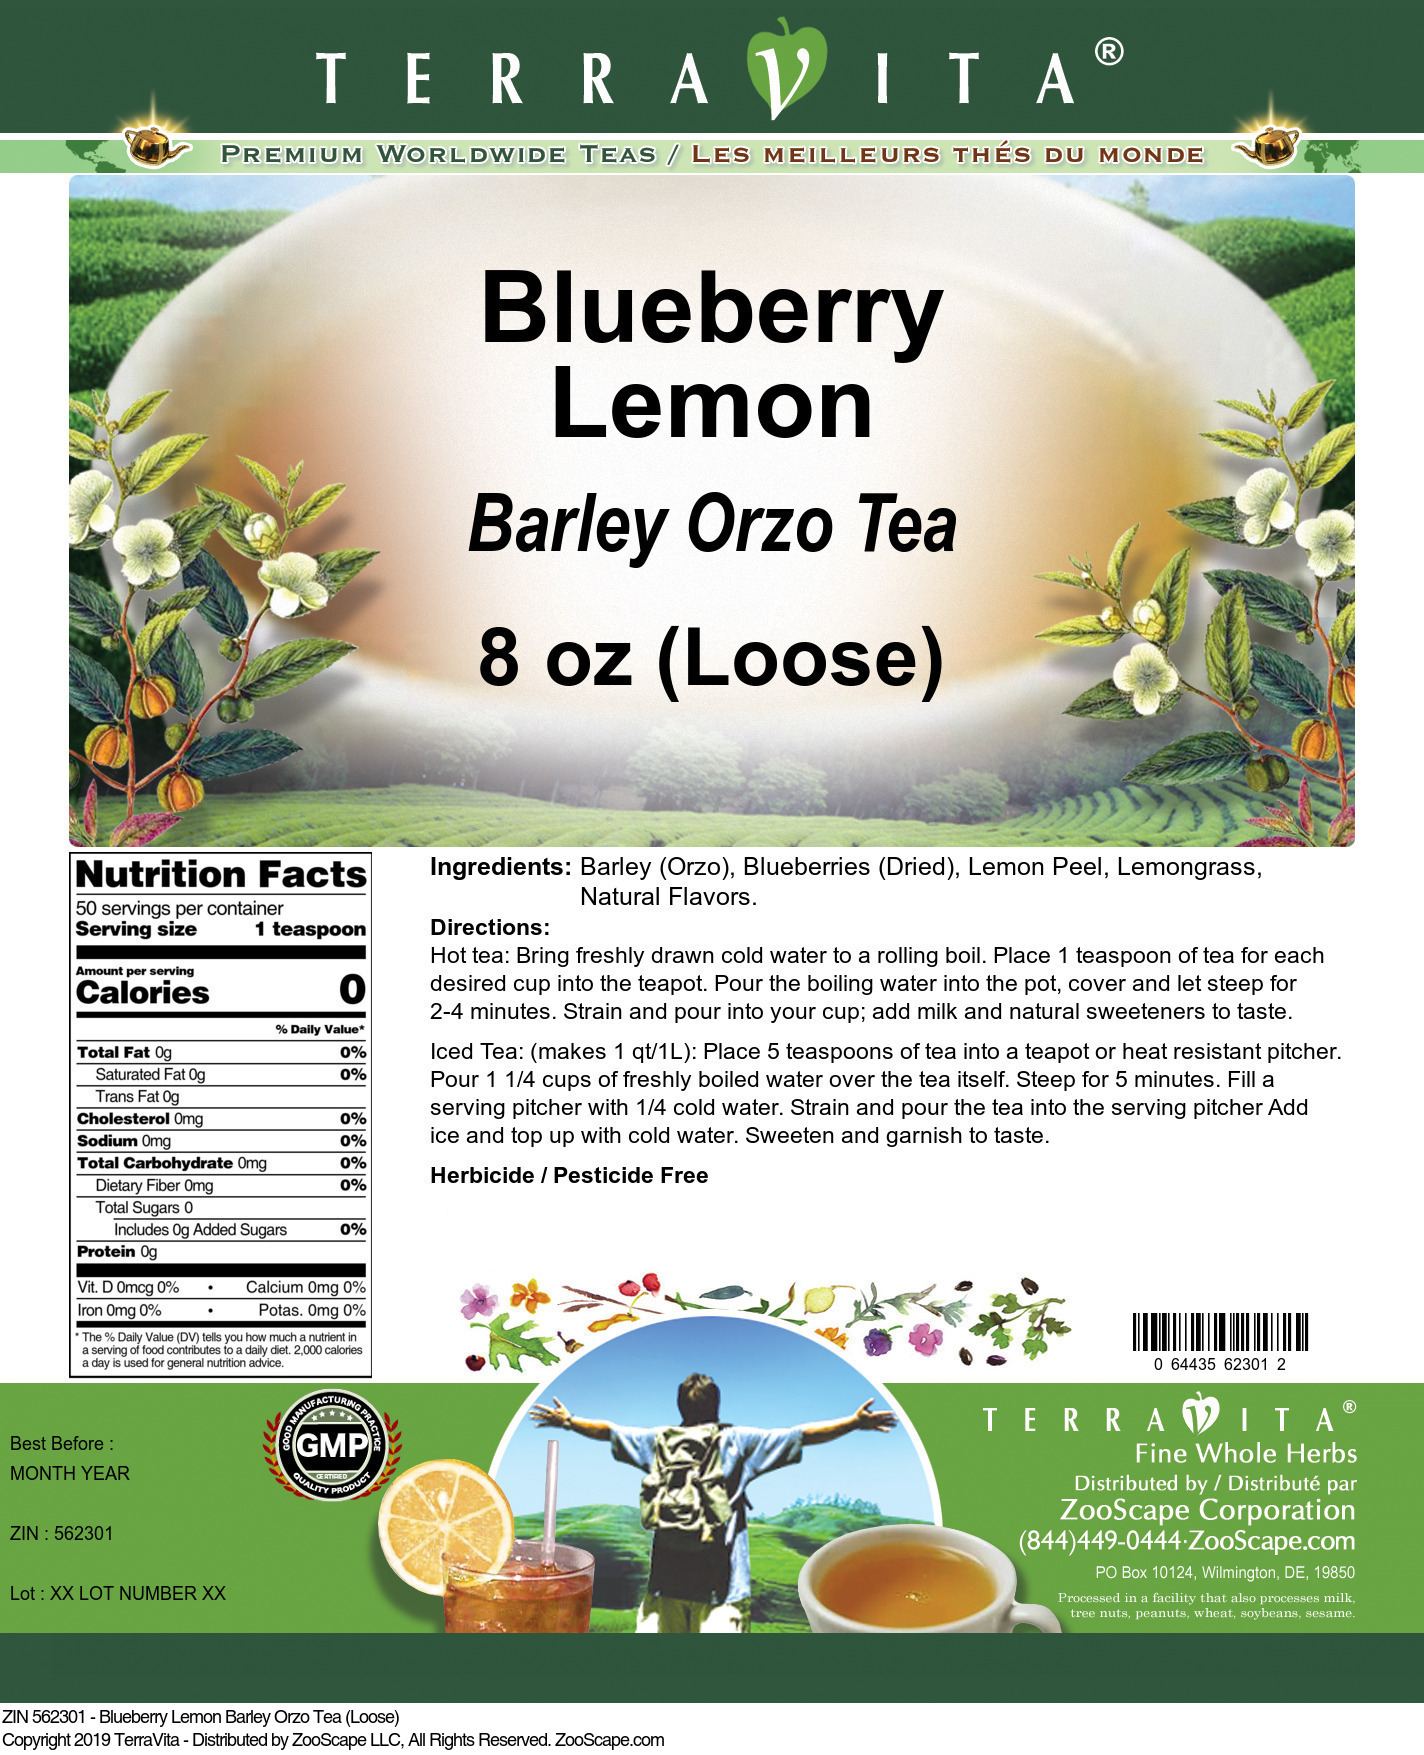 Blueberry Lemon Barley Orzo Tea (Loose) - Label